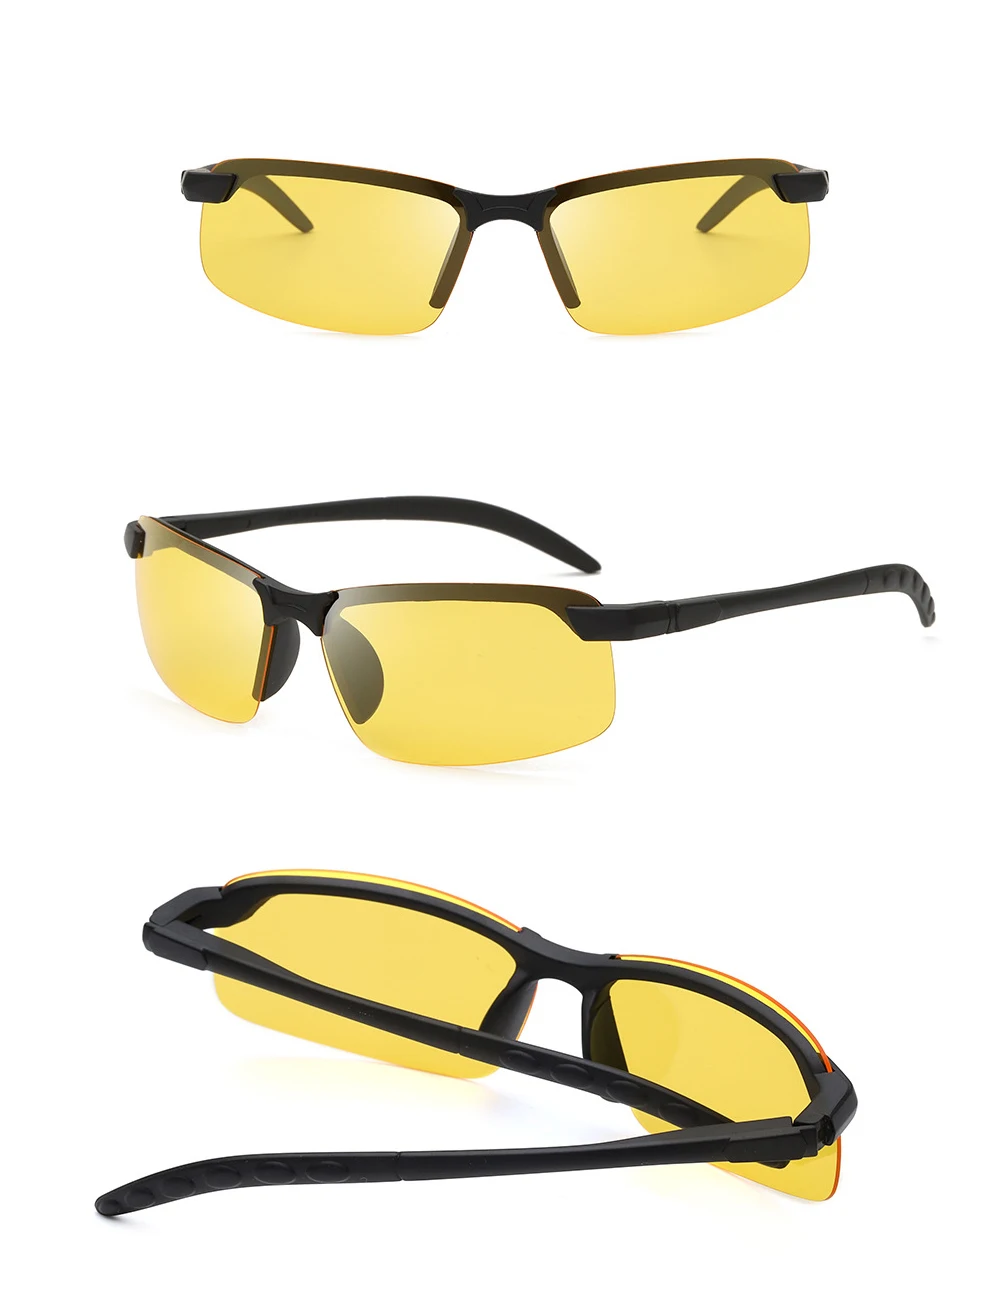 Универсальные поляризованные солнцезащитные очки для езды на автомобиле, очки для вождения в ночное время, зеркальные очки для езды, солнцезащитные очки HD vision